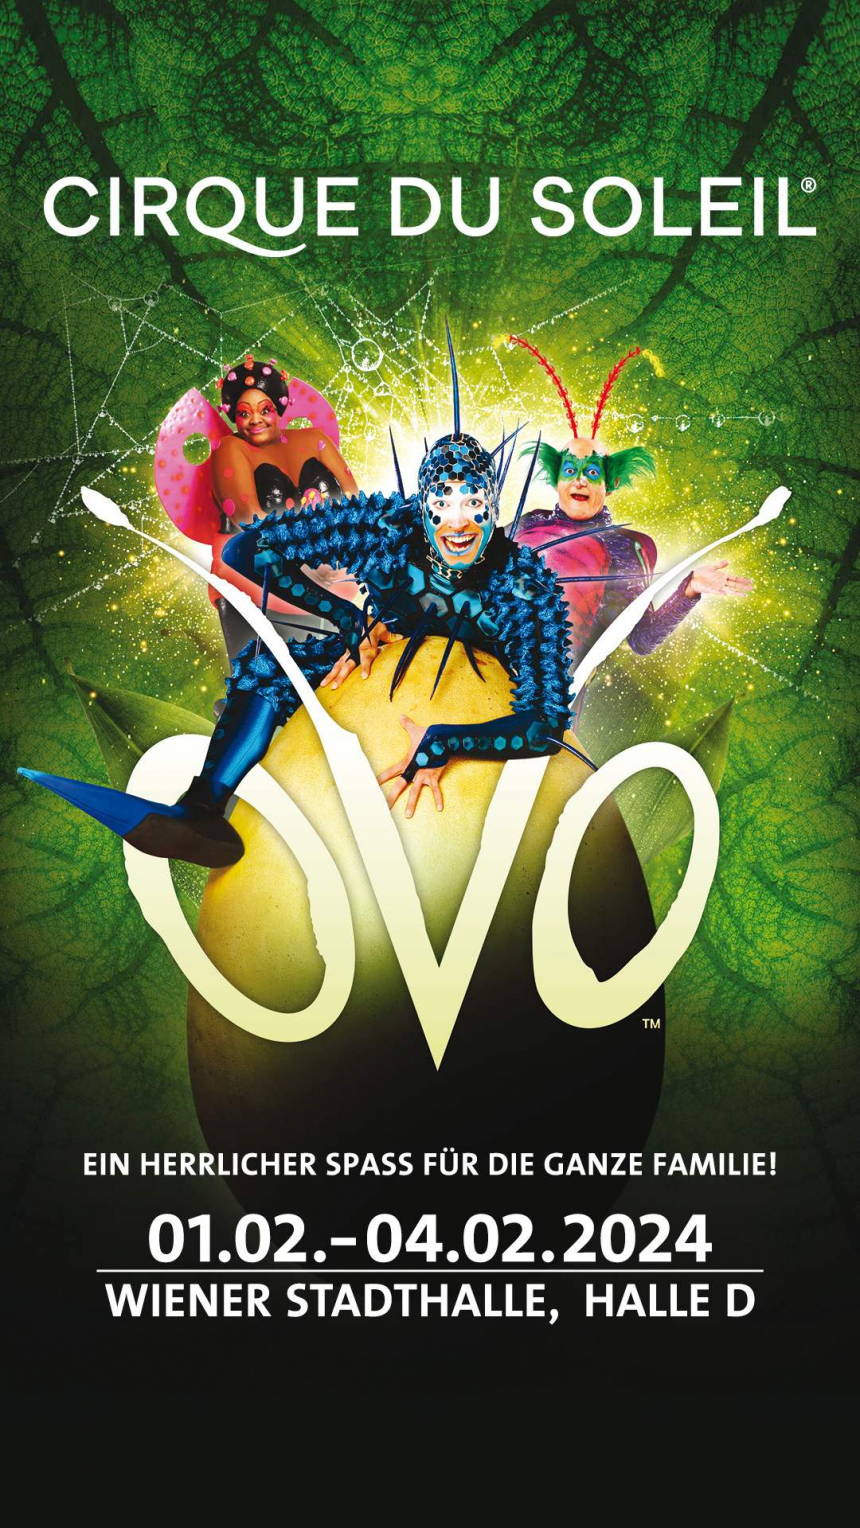 OVO - Cirque du Soleil_1500x644 © Live Nation GmbH